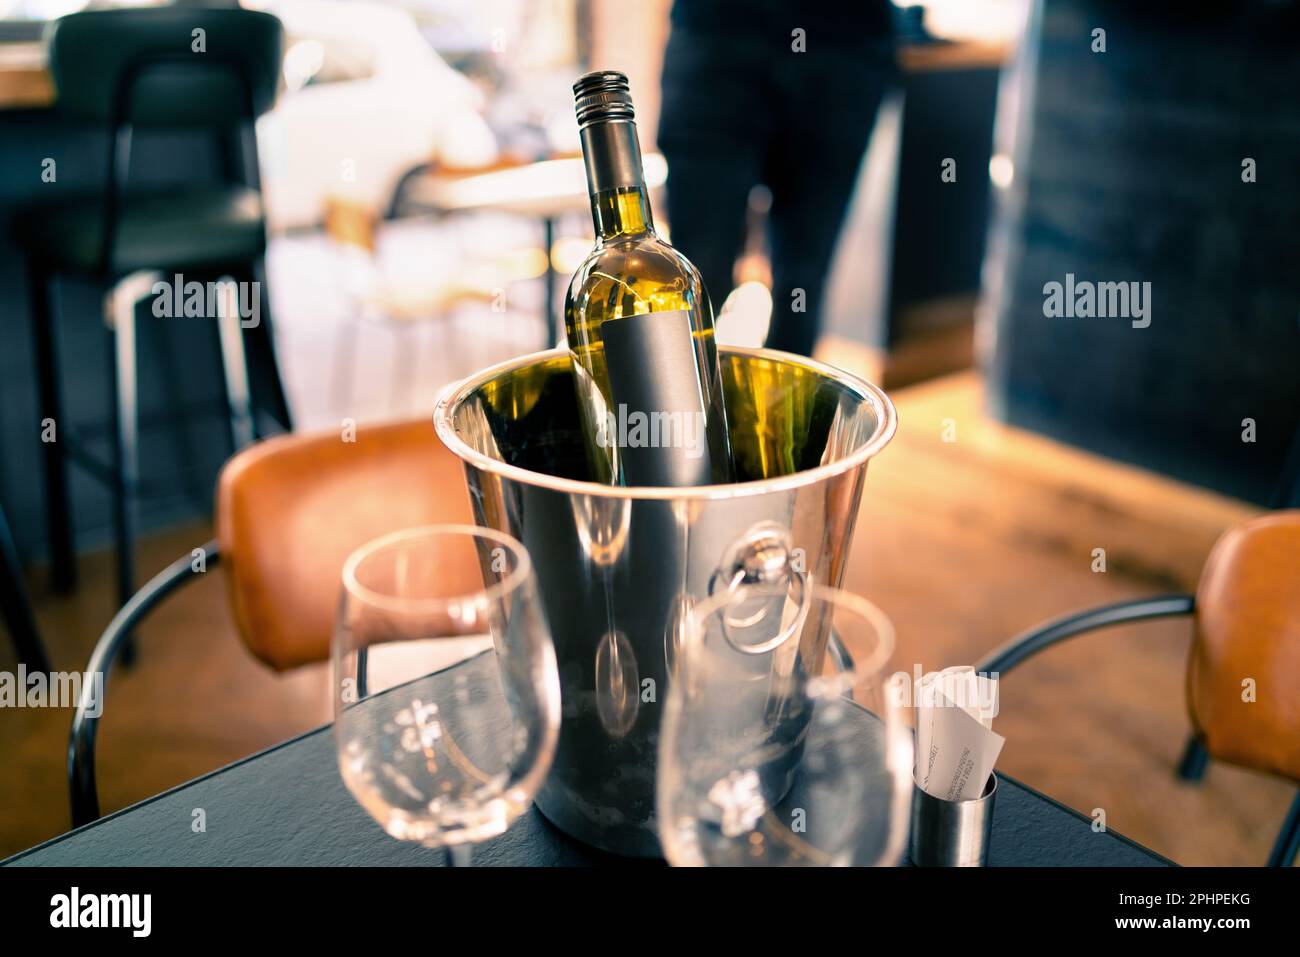 Eine Flasche Wein im Eiskübel auf dem Restaurant- oder Bartisch. Getränkekühler im Pub. White sauvignon Blanc, chardonnay oder riesling. Stockfoto